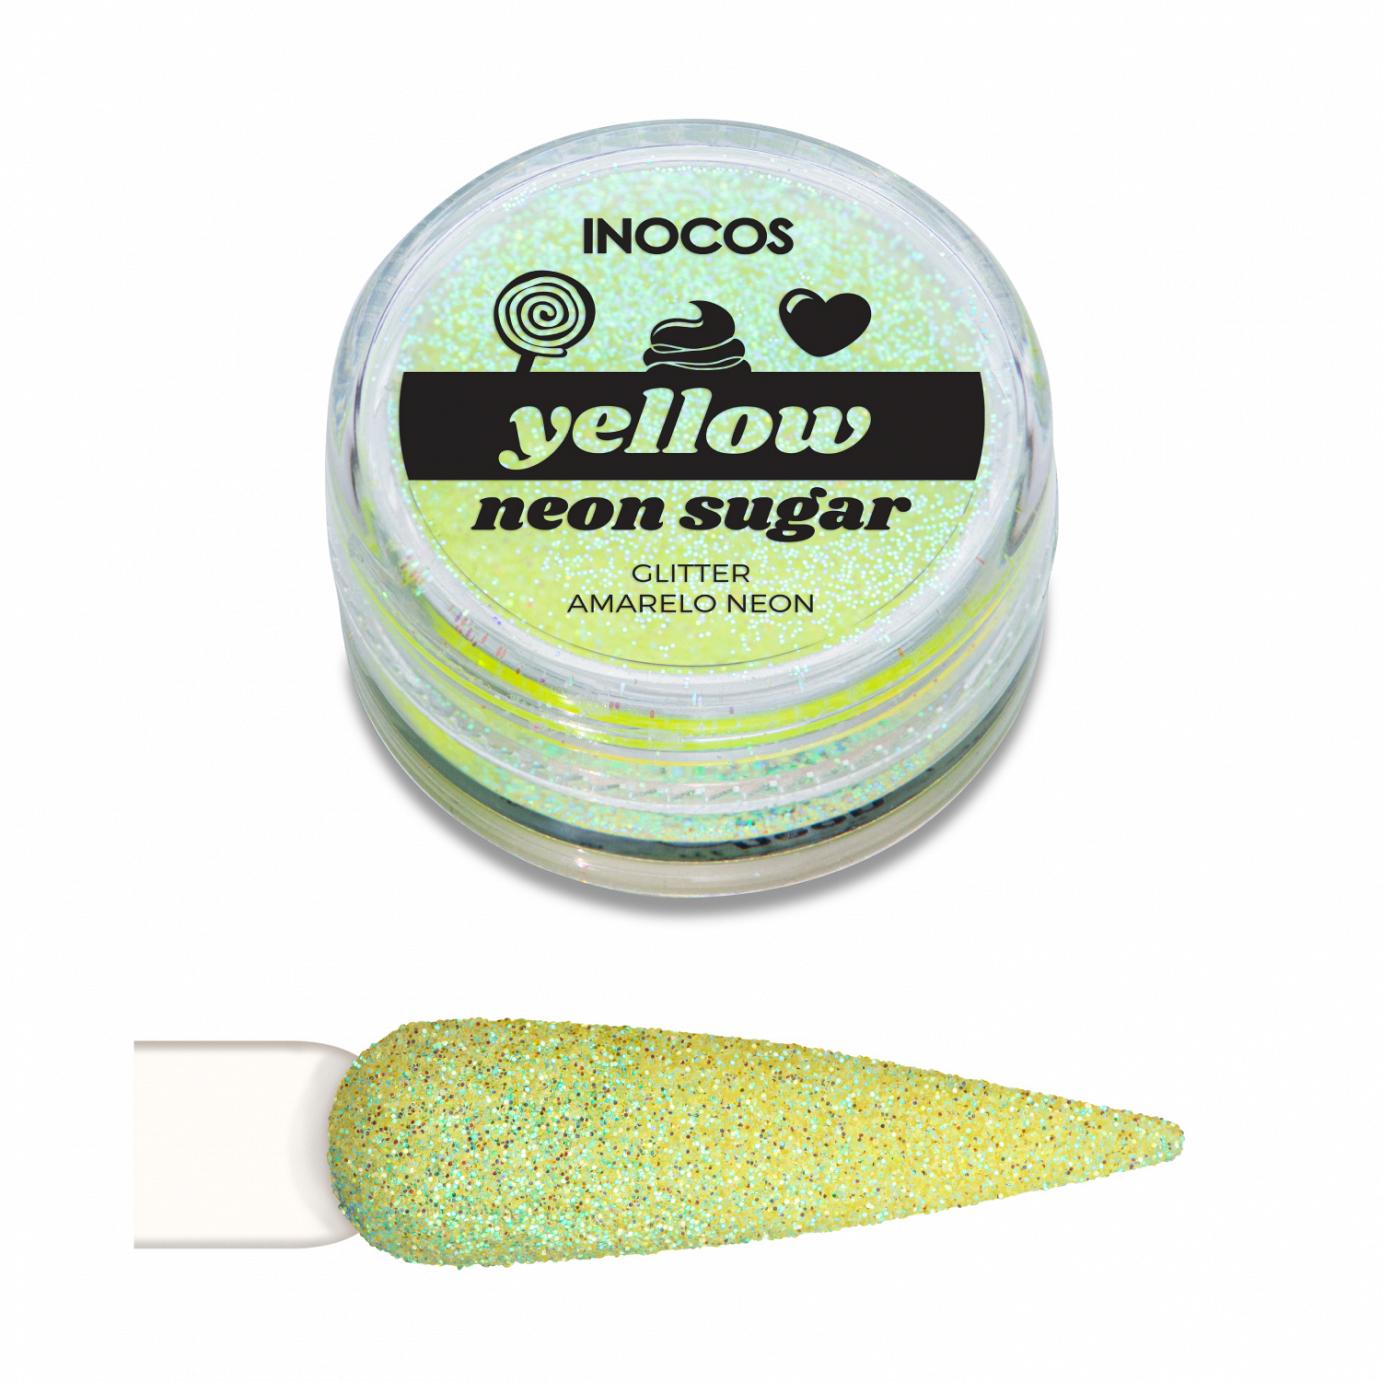 Inocos glitter para unhas pó Neon Sugar yellow